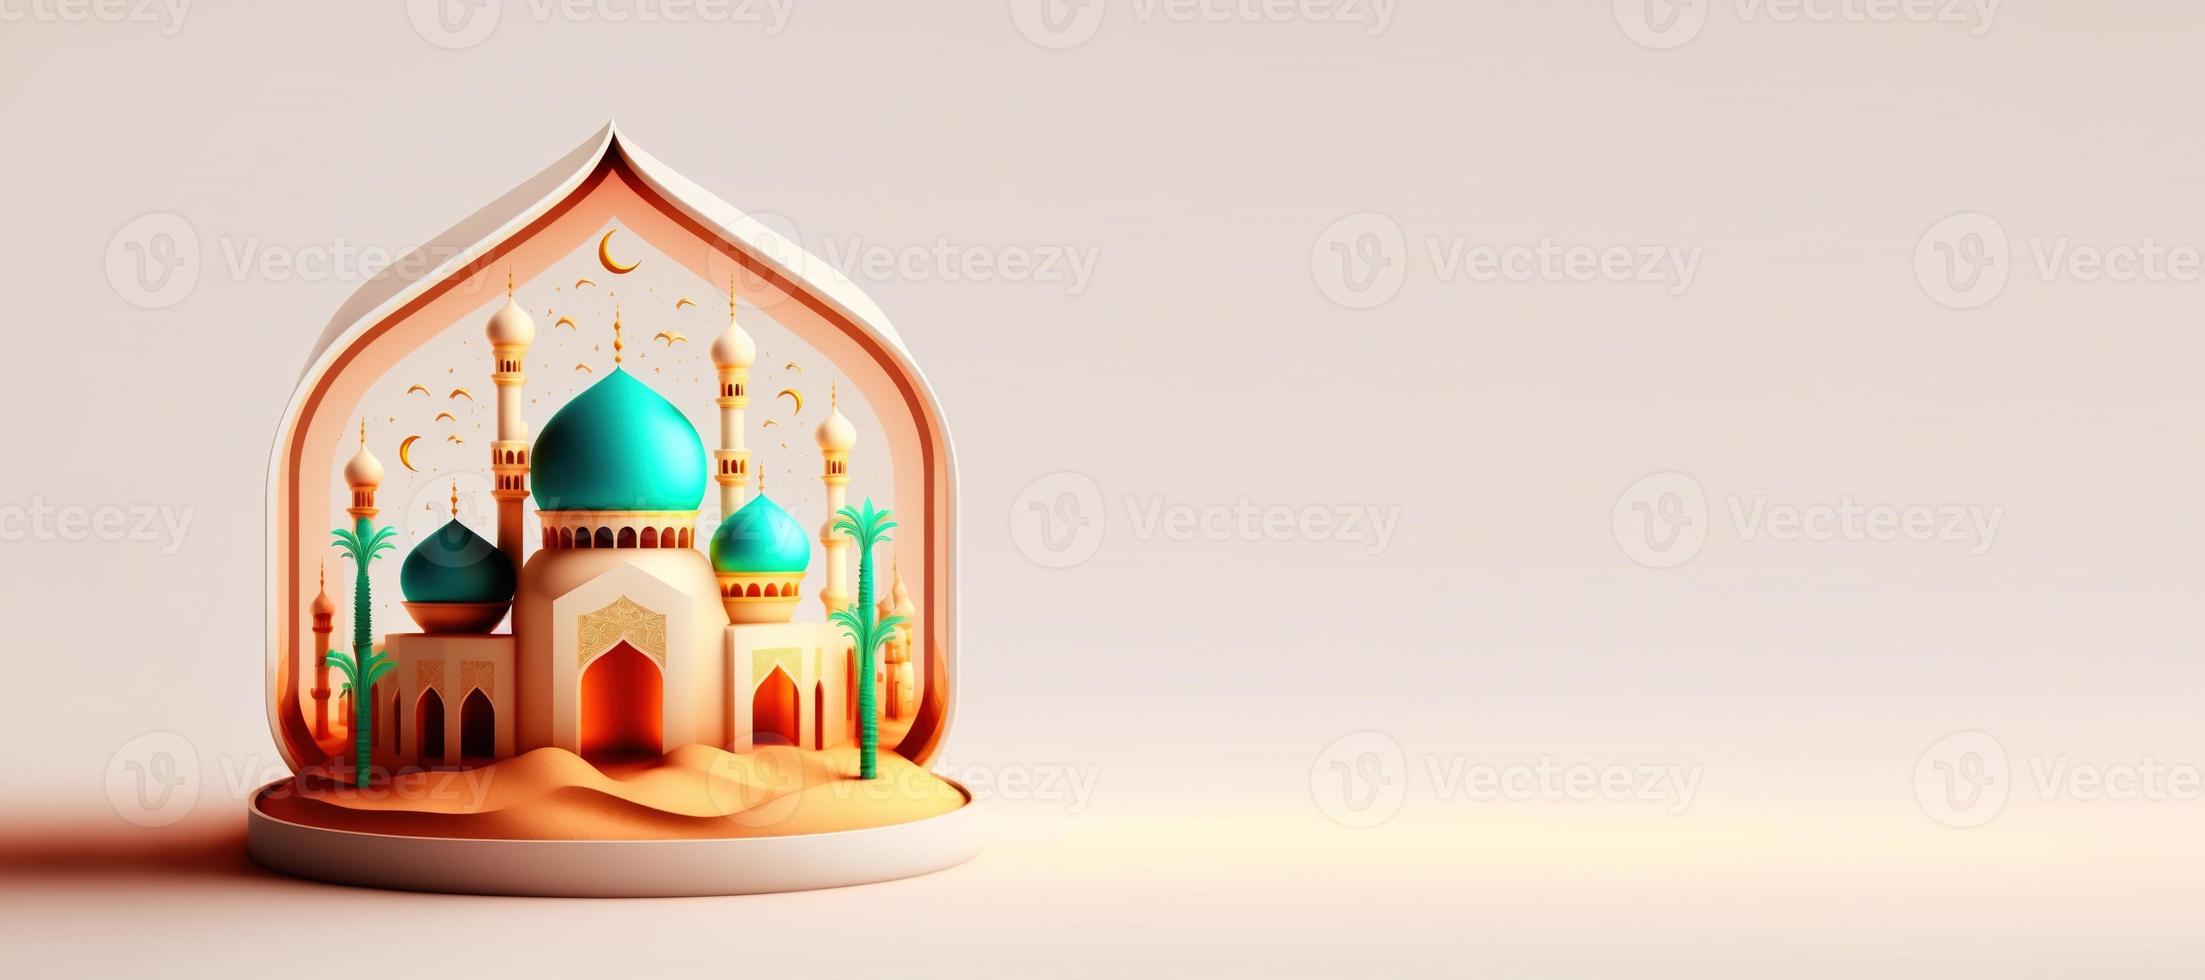 digitale illustration der moschee für eid ramadan islamischer feierhintergrund mit leerem raum foto